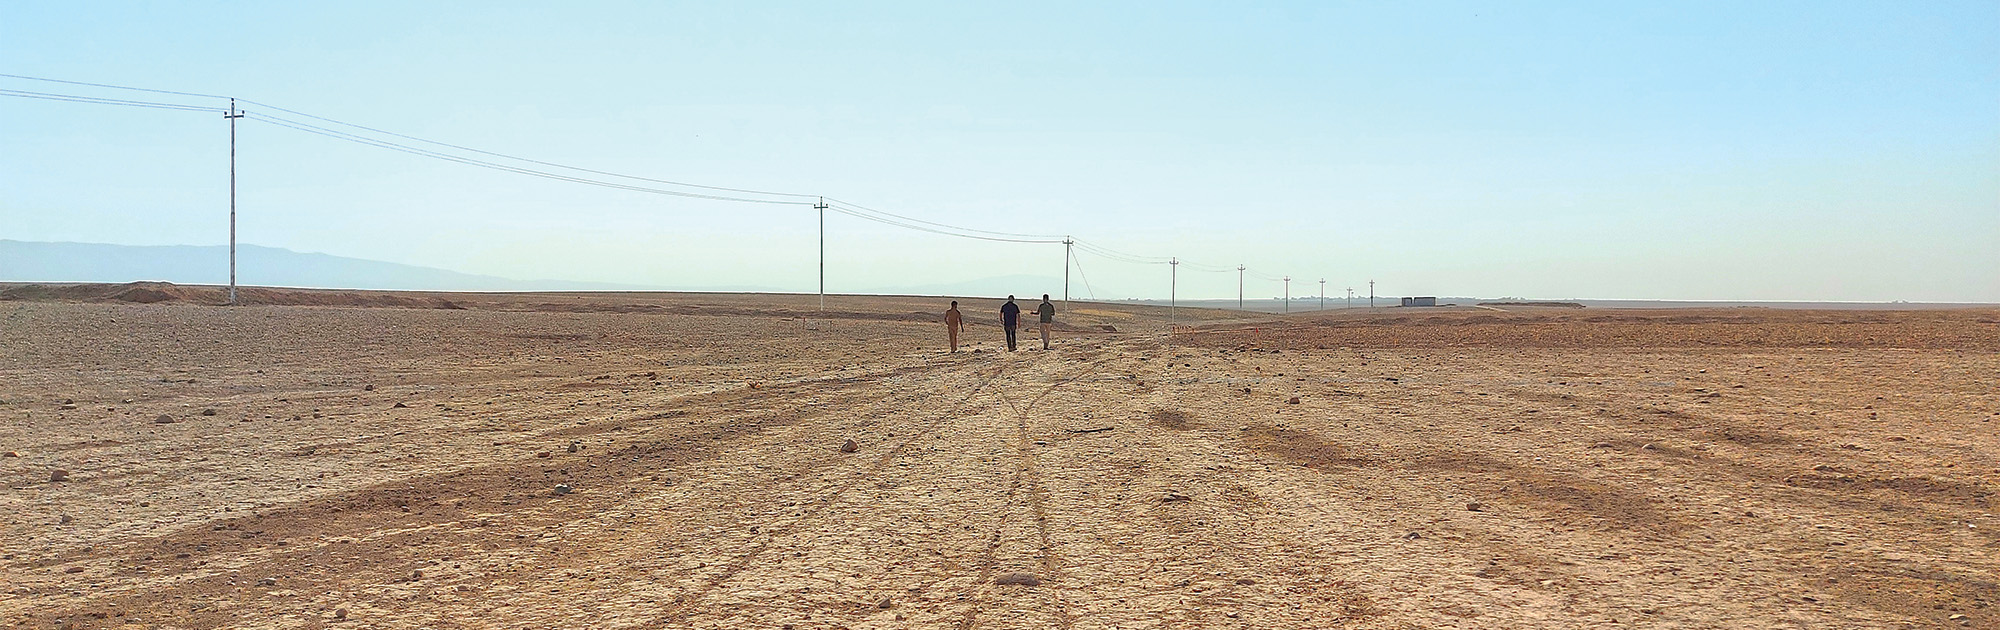 Three people walking side-by-side across desert terrain toward a  